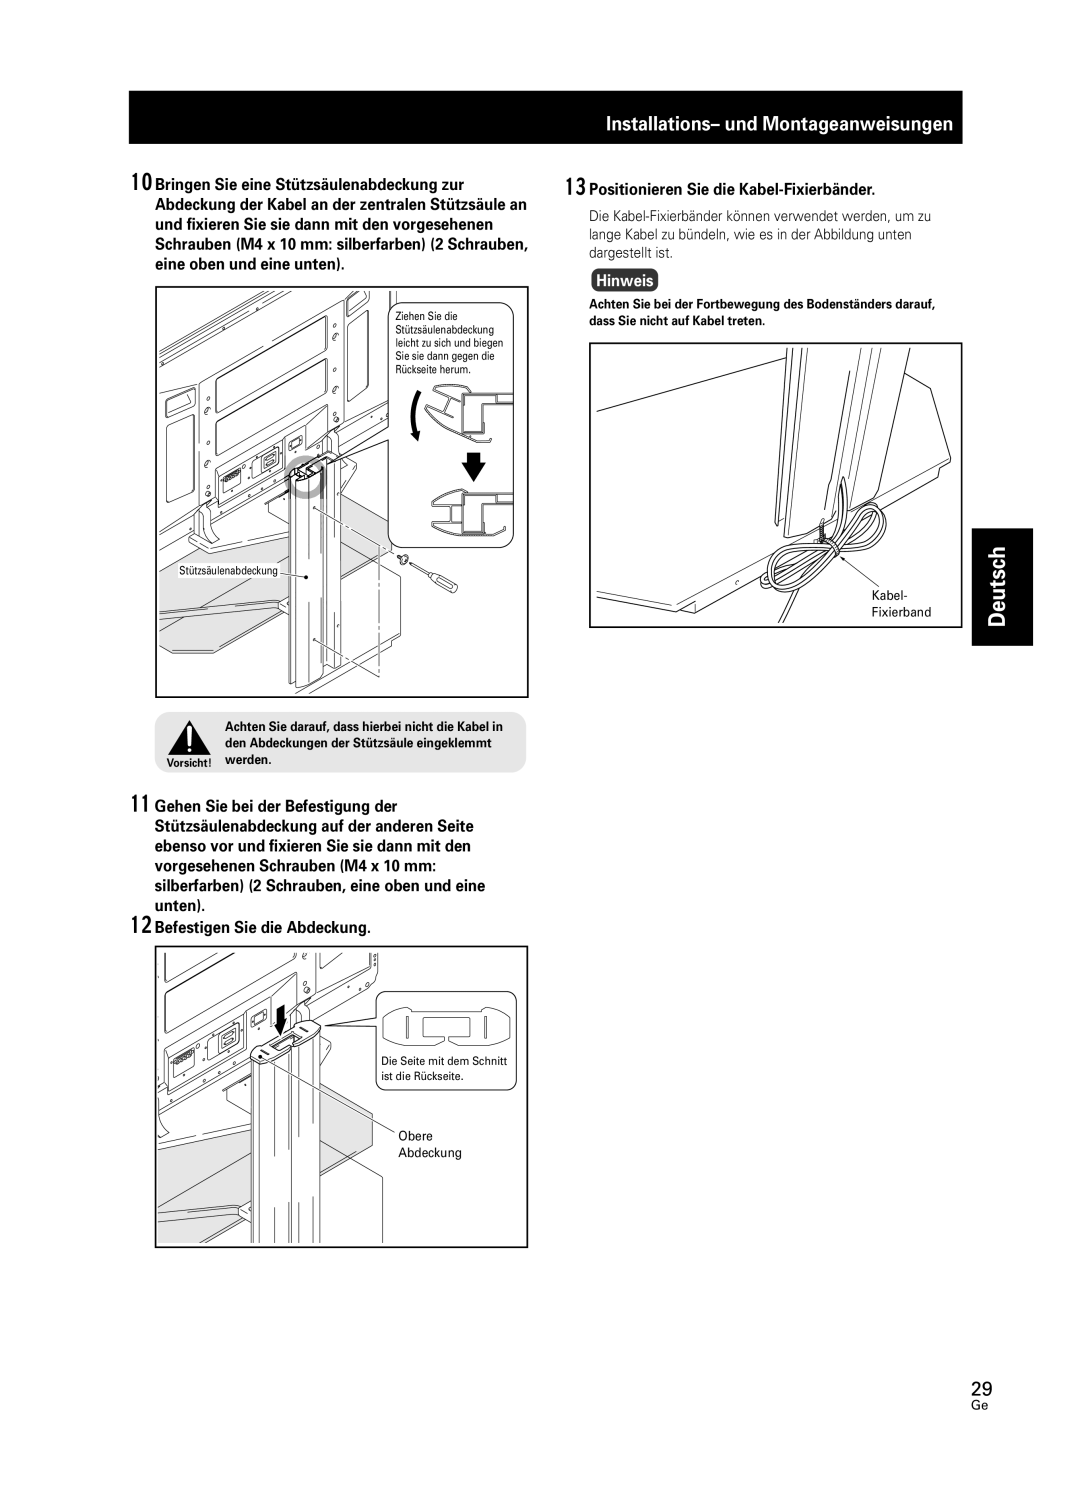 Pioneer PDK-FS05 manual Deutsch, Installations- und Montageanweisungen, Bringen Sie eine Stützsäulenabdeckung zur, Hinweis 